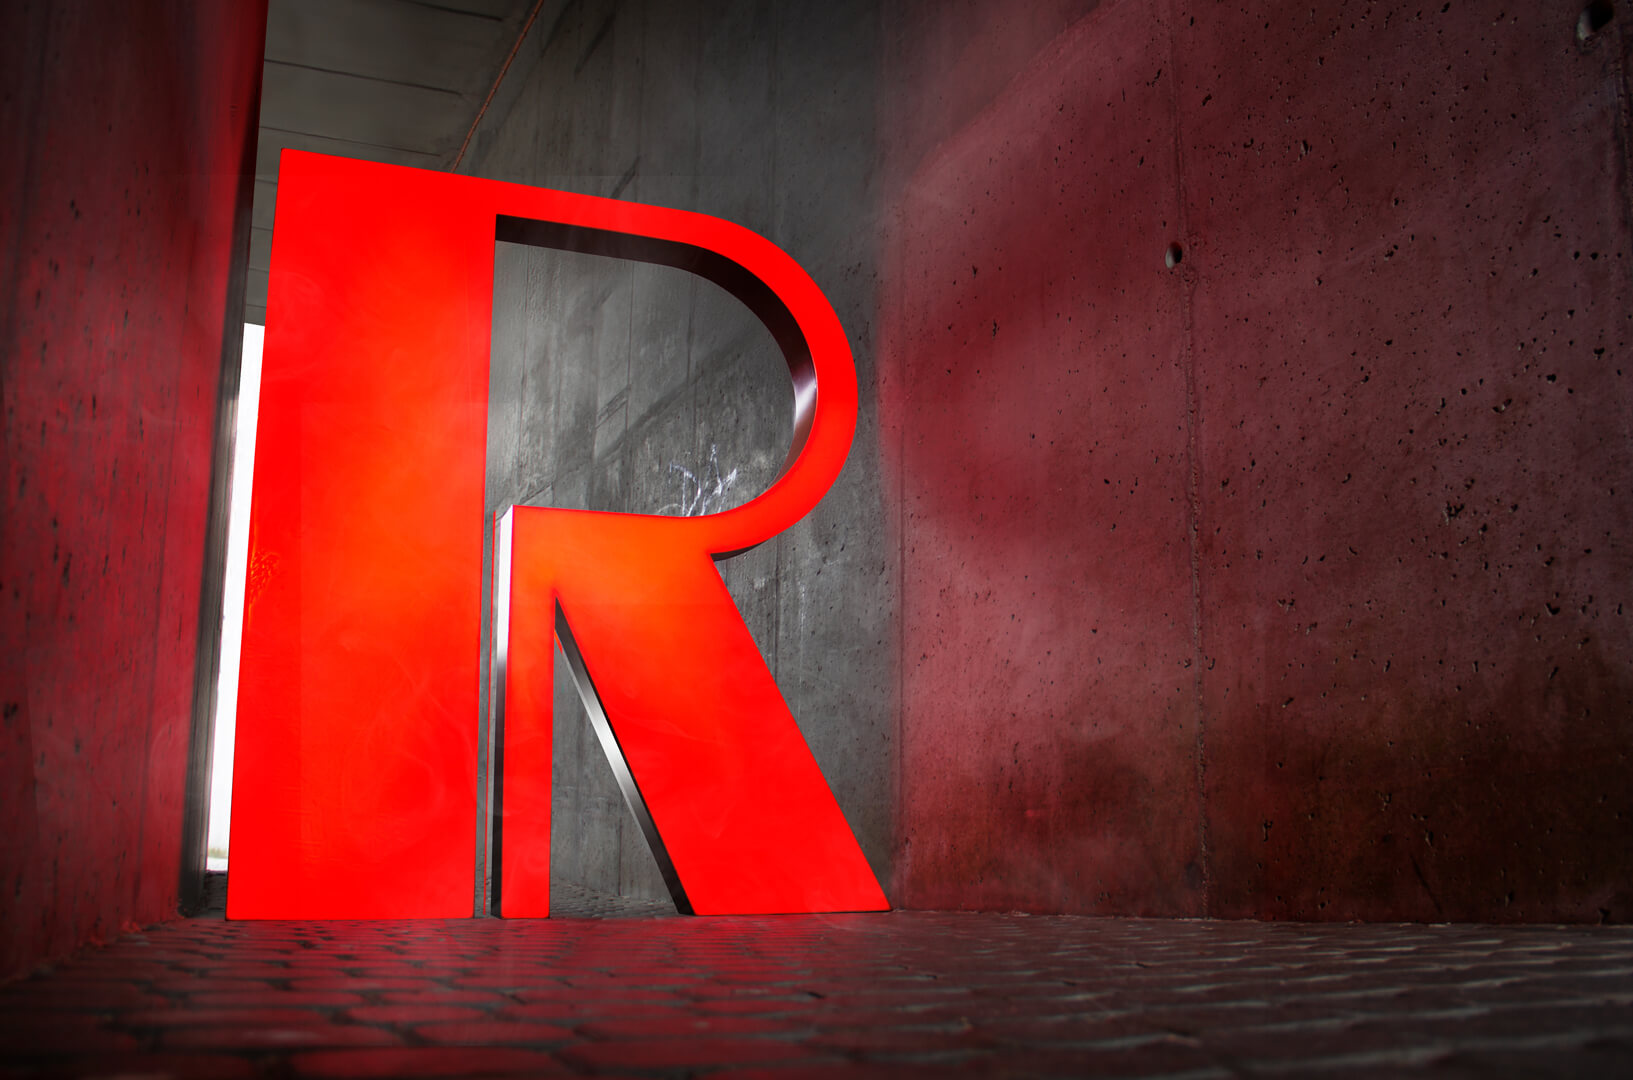 Lettera rossa R - Lettera R di grande formato in rosso, retroilluminata a LED.